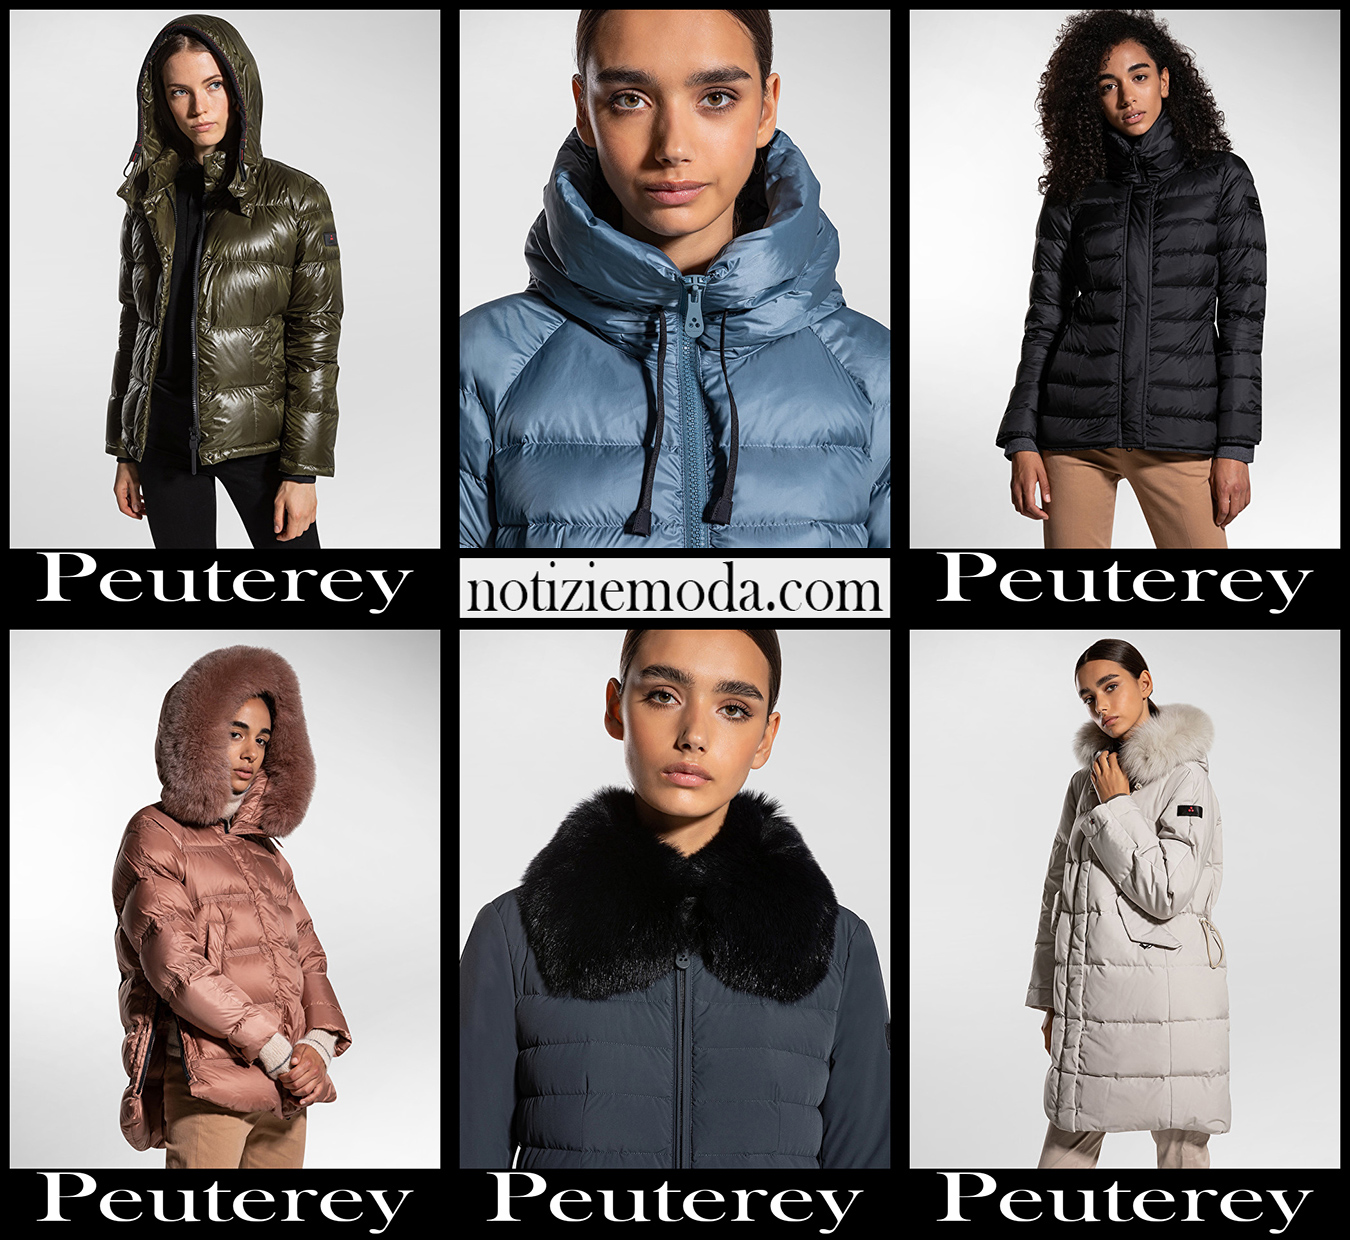 Piumini Peuterey 20 2021 autunno inverno moda donna